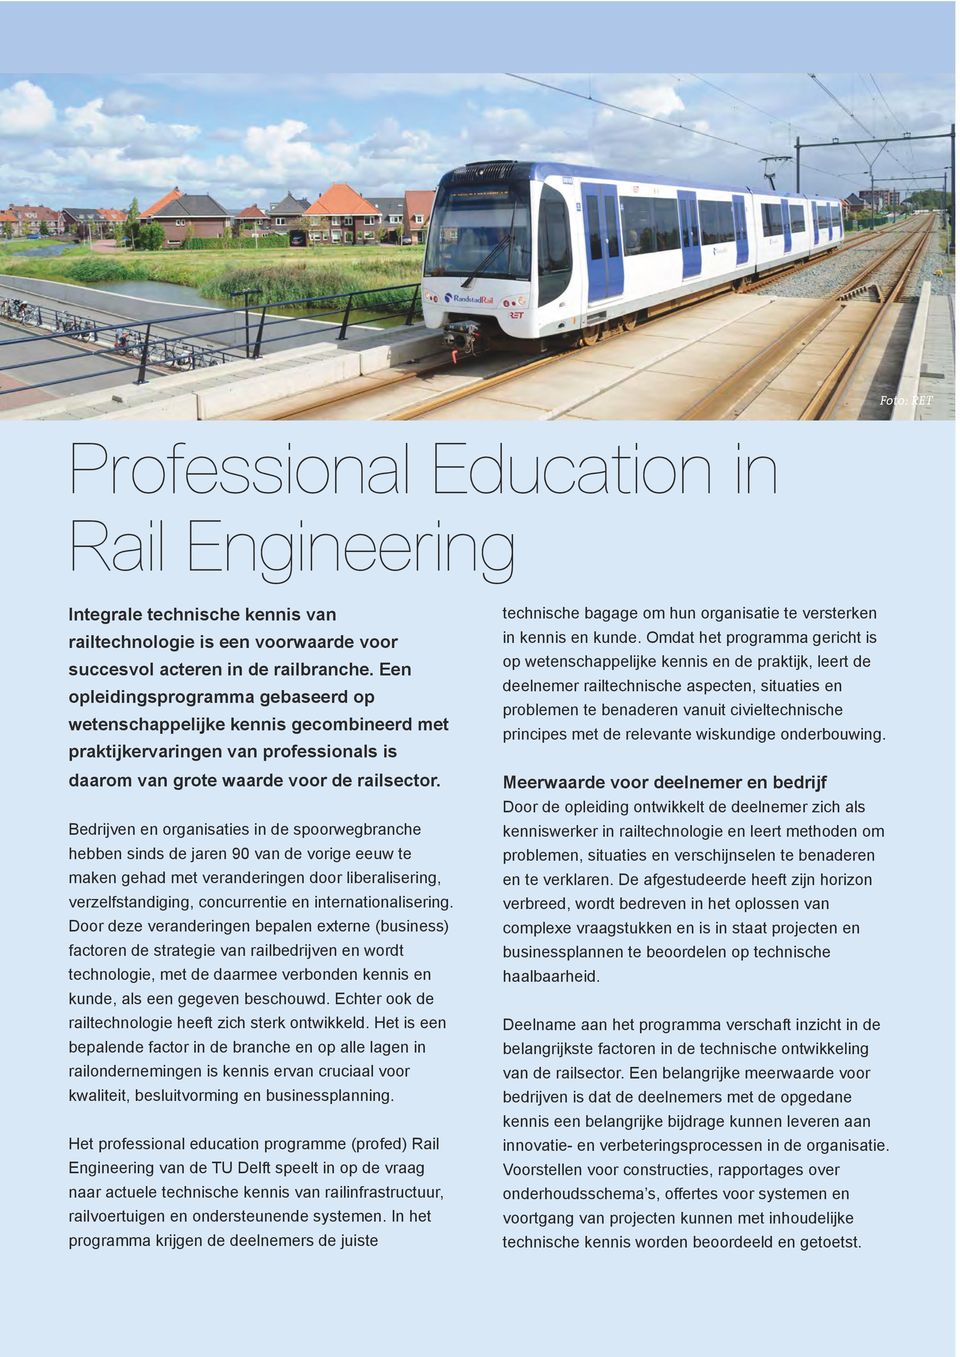 Specifieke onderwerpen en praktijkvoorbeelden worden diepgaand belicht door deskundigen uit de railbranche.